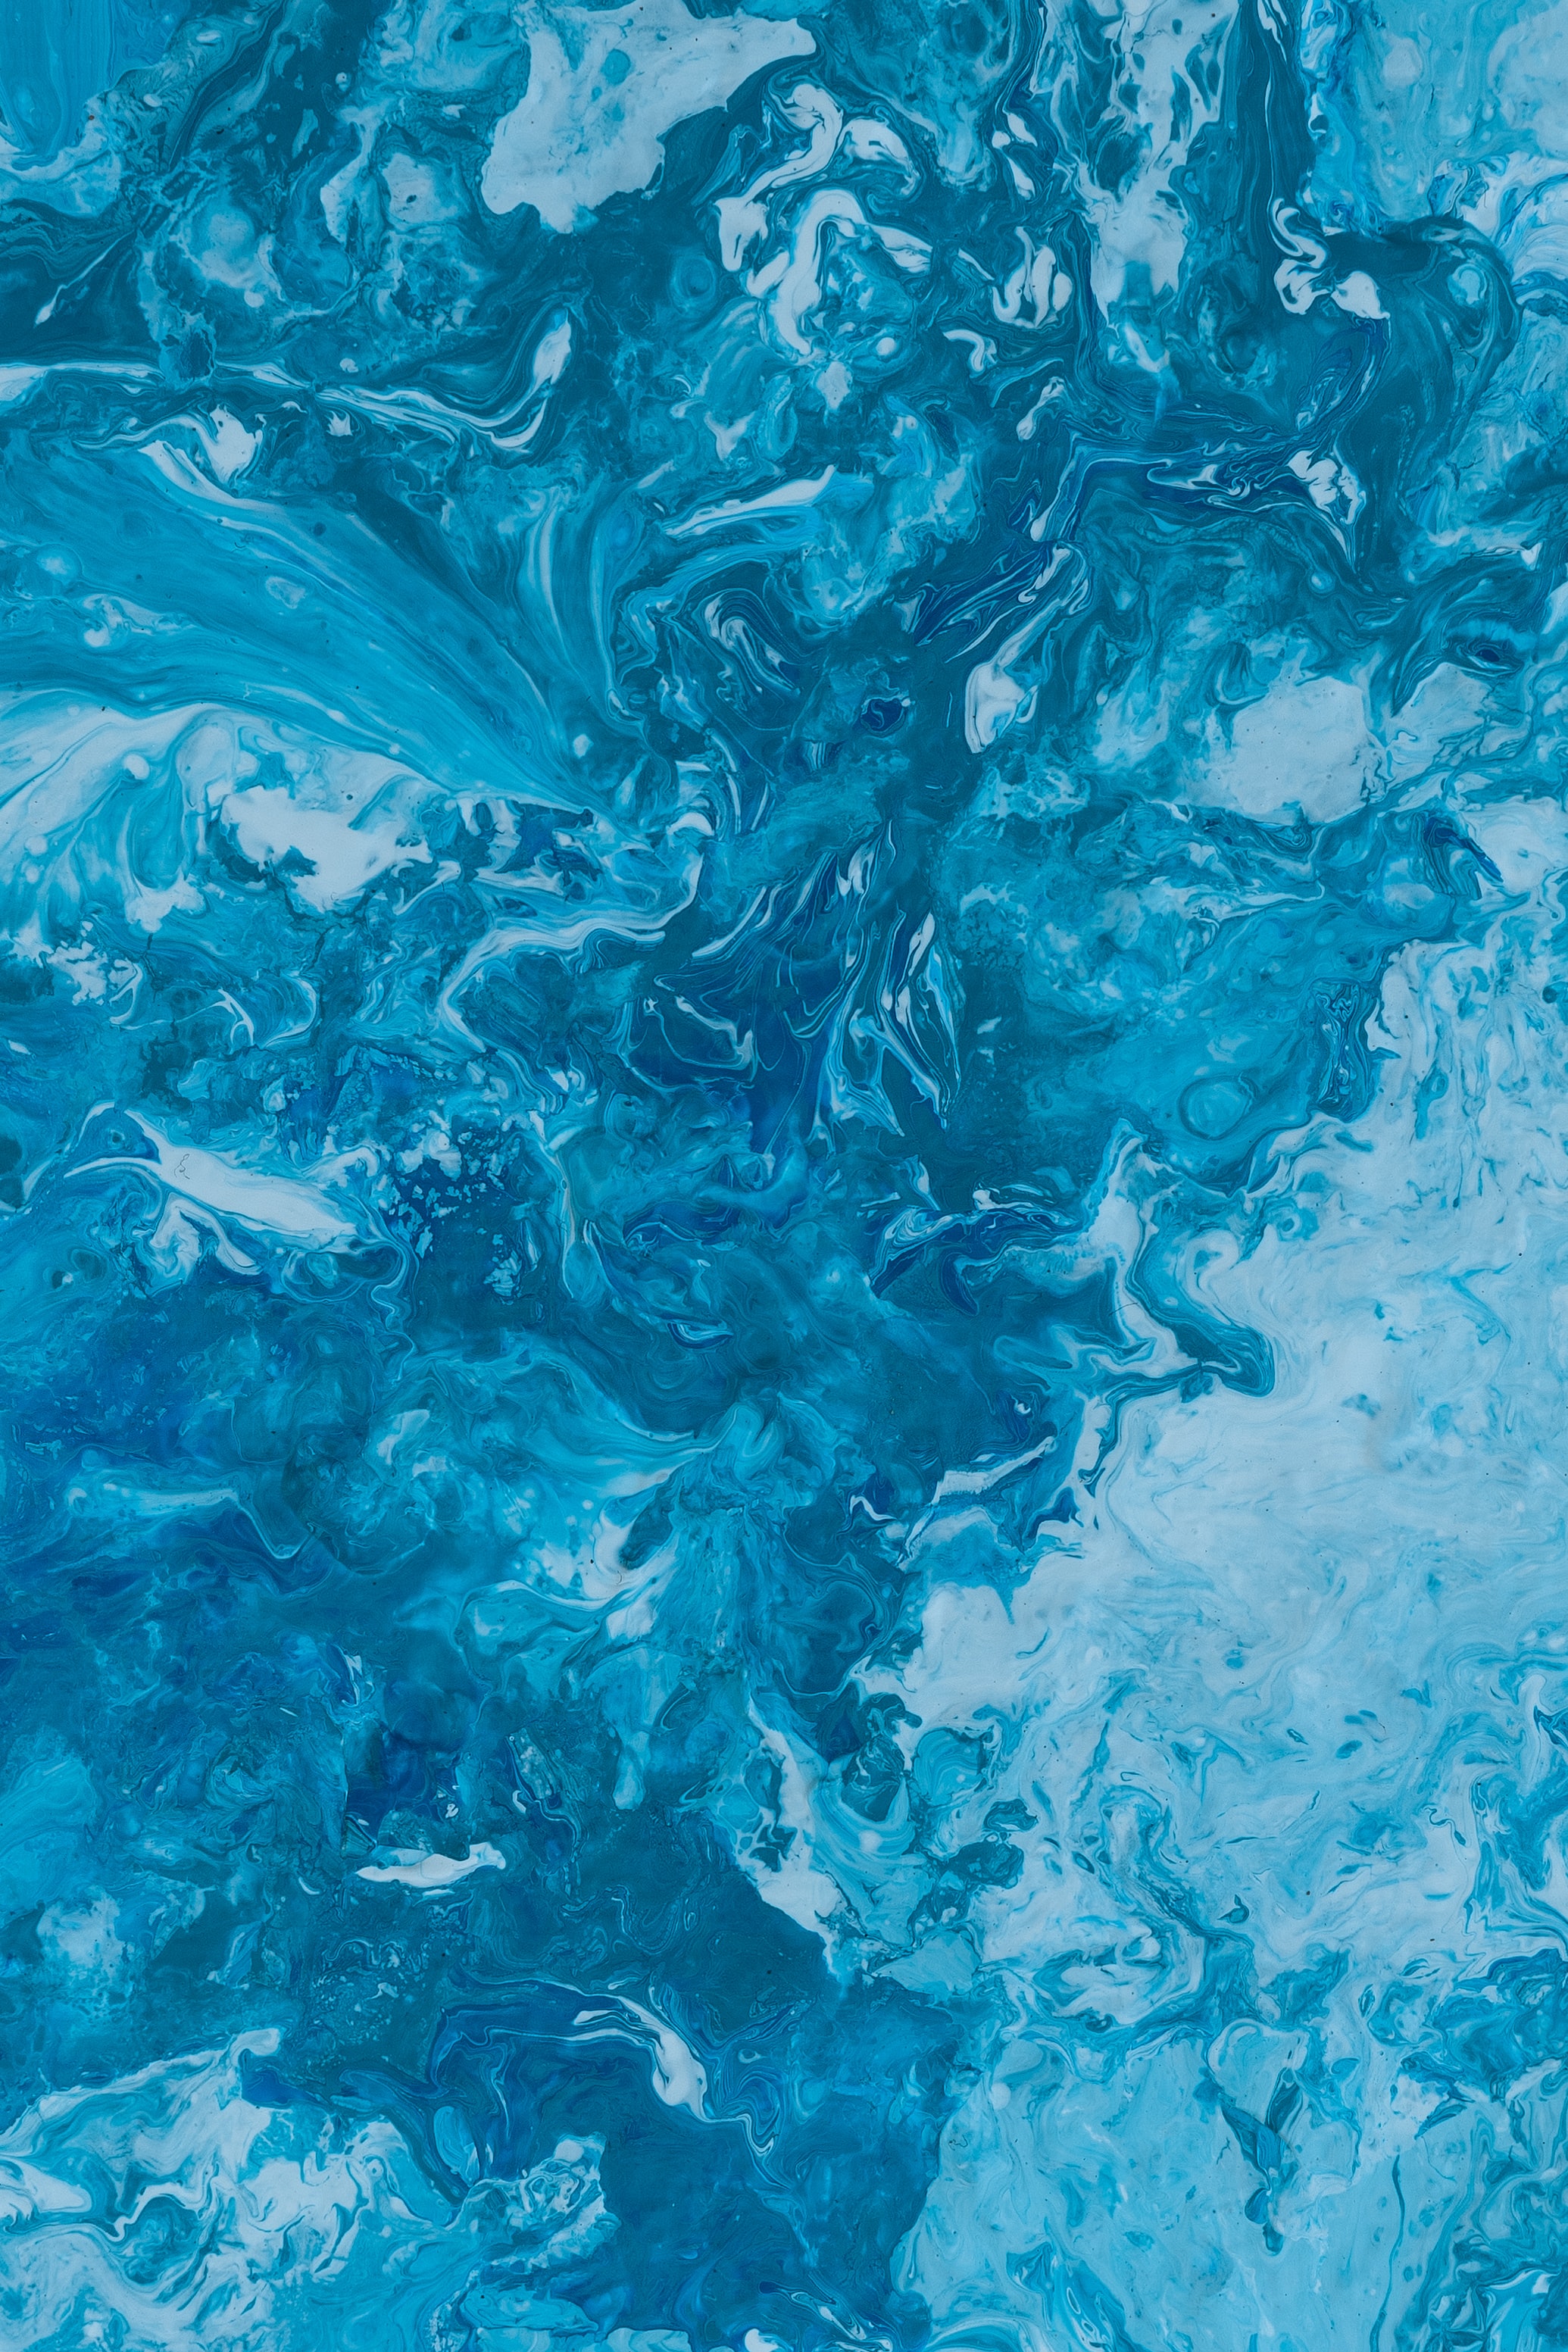 abstract, blue, divorces, paint, liquid Image for desktop